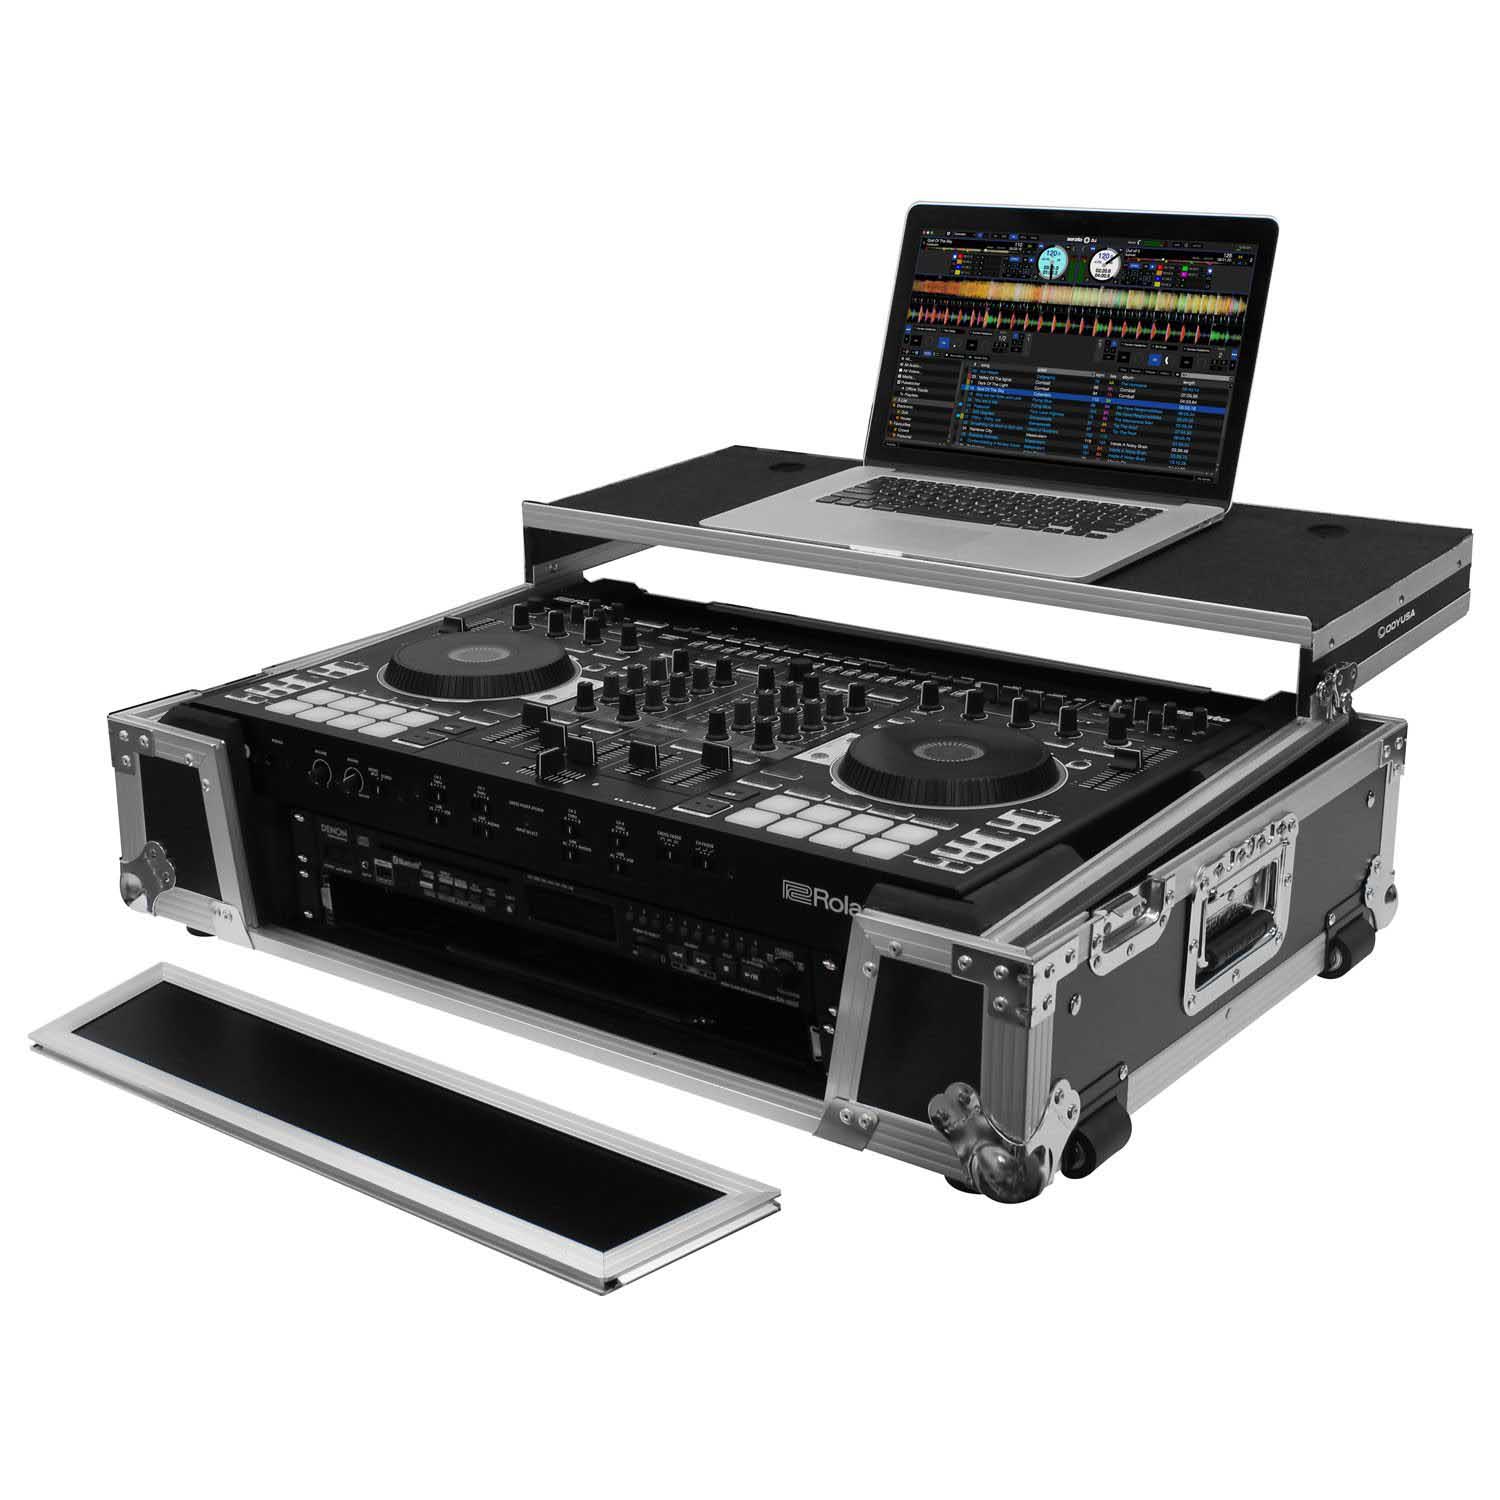 Odyssey FZGSDJ808W2 Flight Case For Roland DJ-808 / Denon MC7000 With 2U Rack Space and Glide Platform - Hollywood DJ